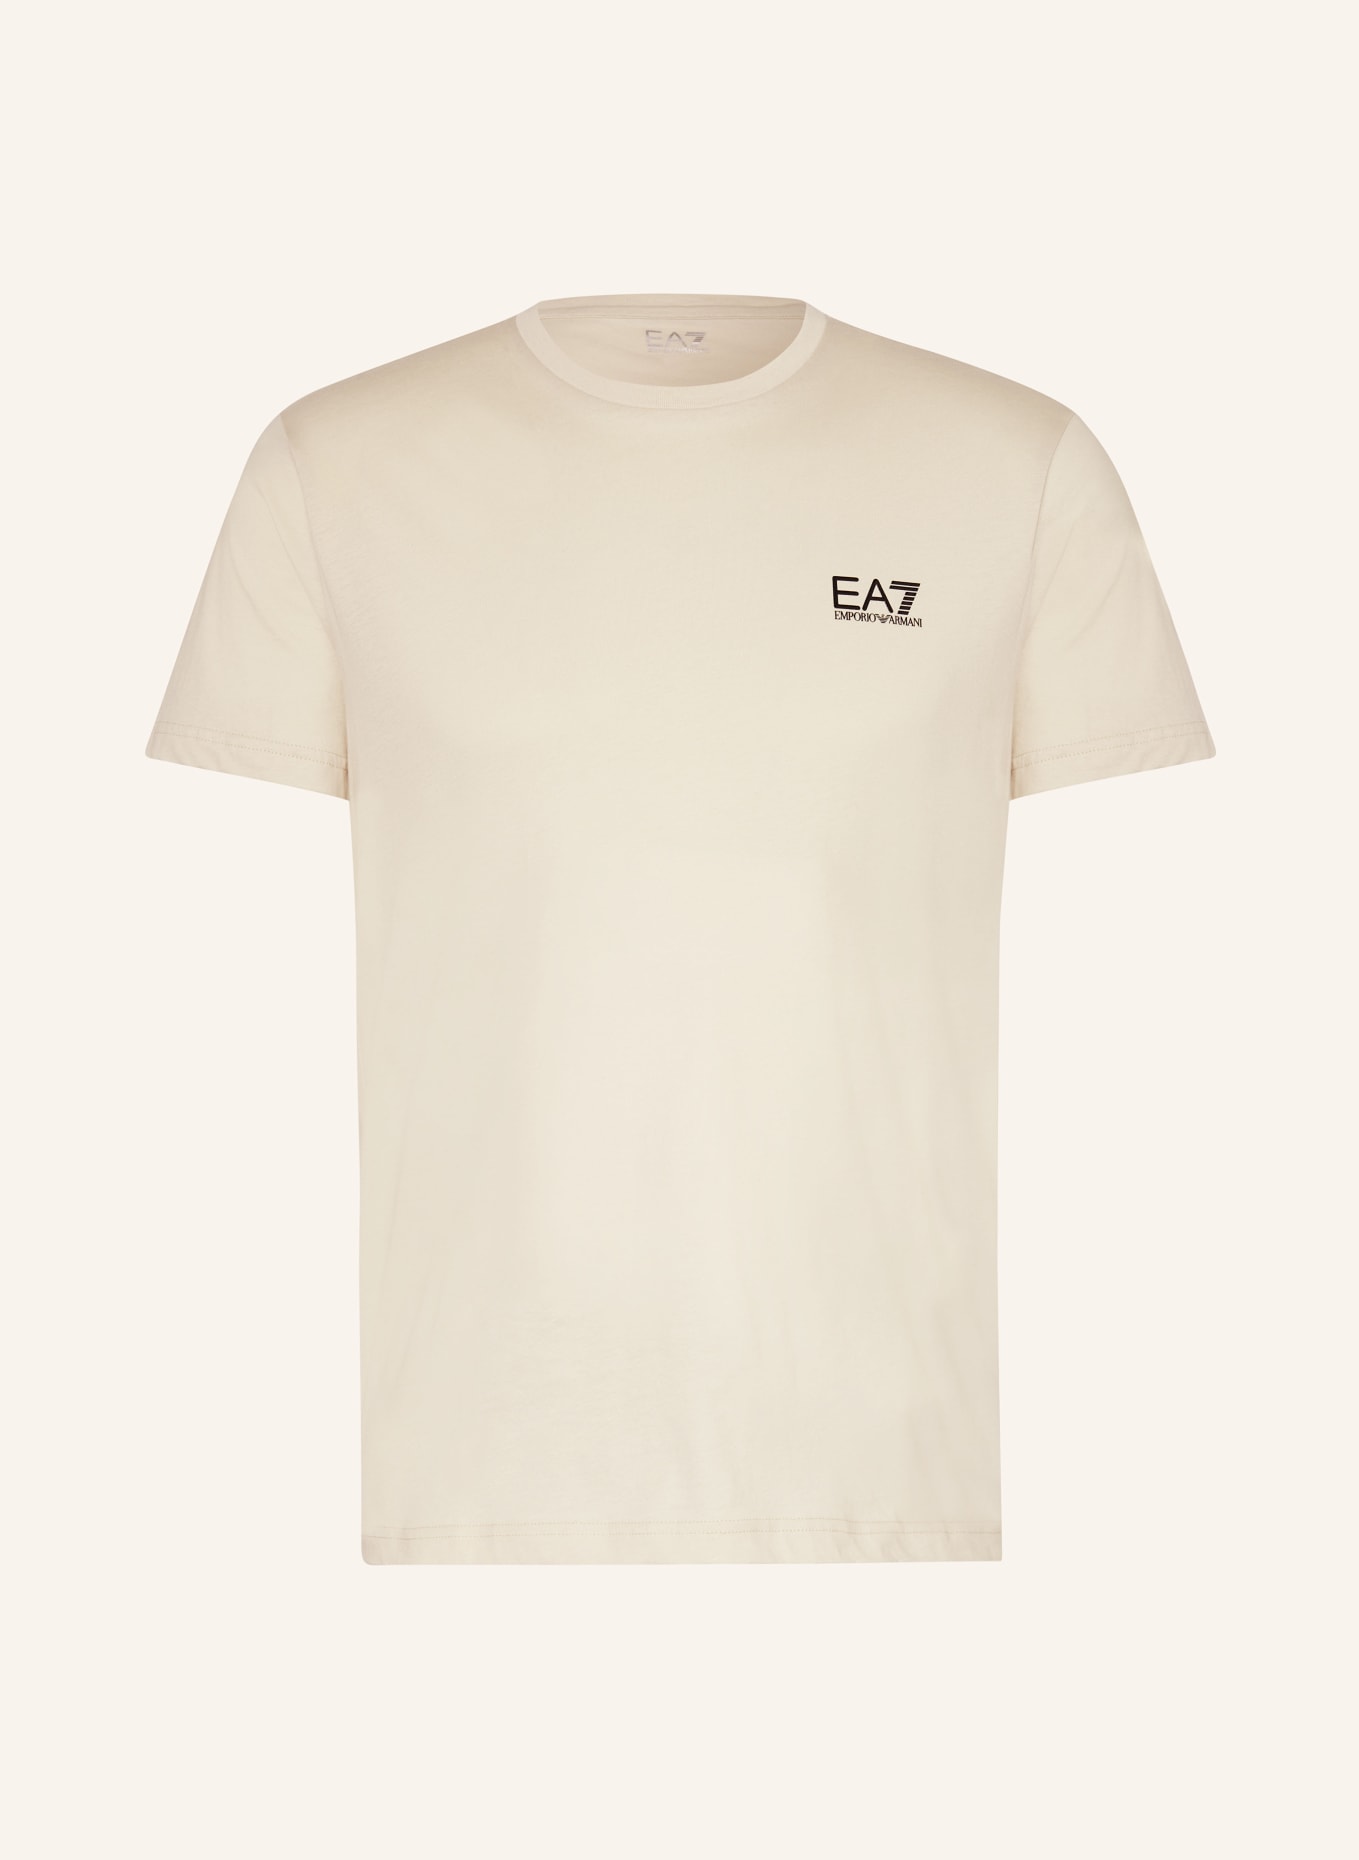 EA7 EMPORIO ARMANI T-Shirt, Farbe: BEIGE (Bild 1)